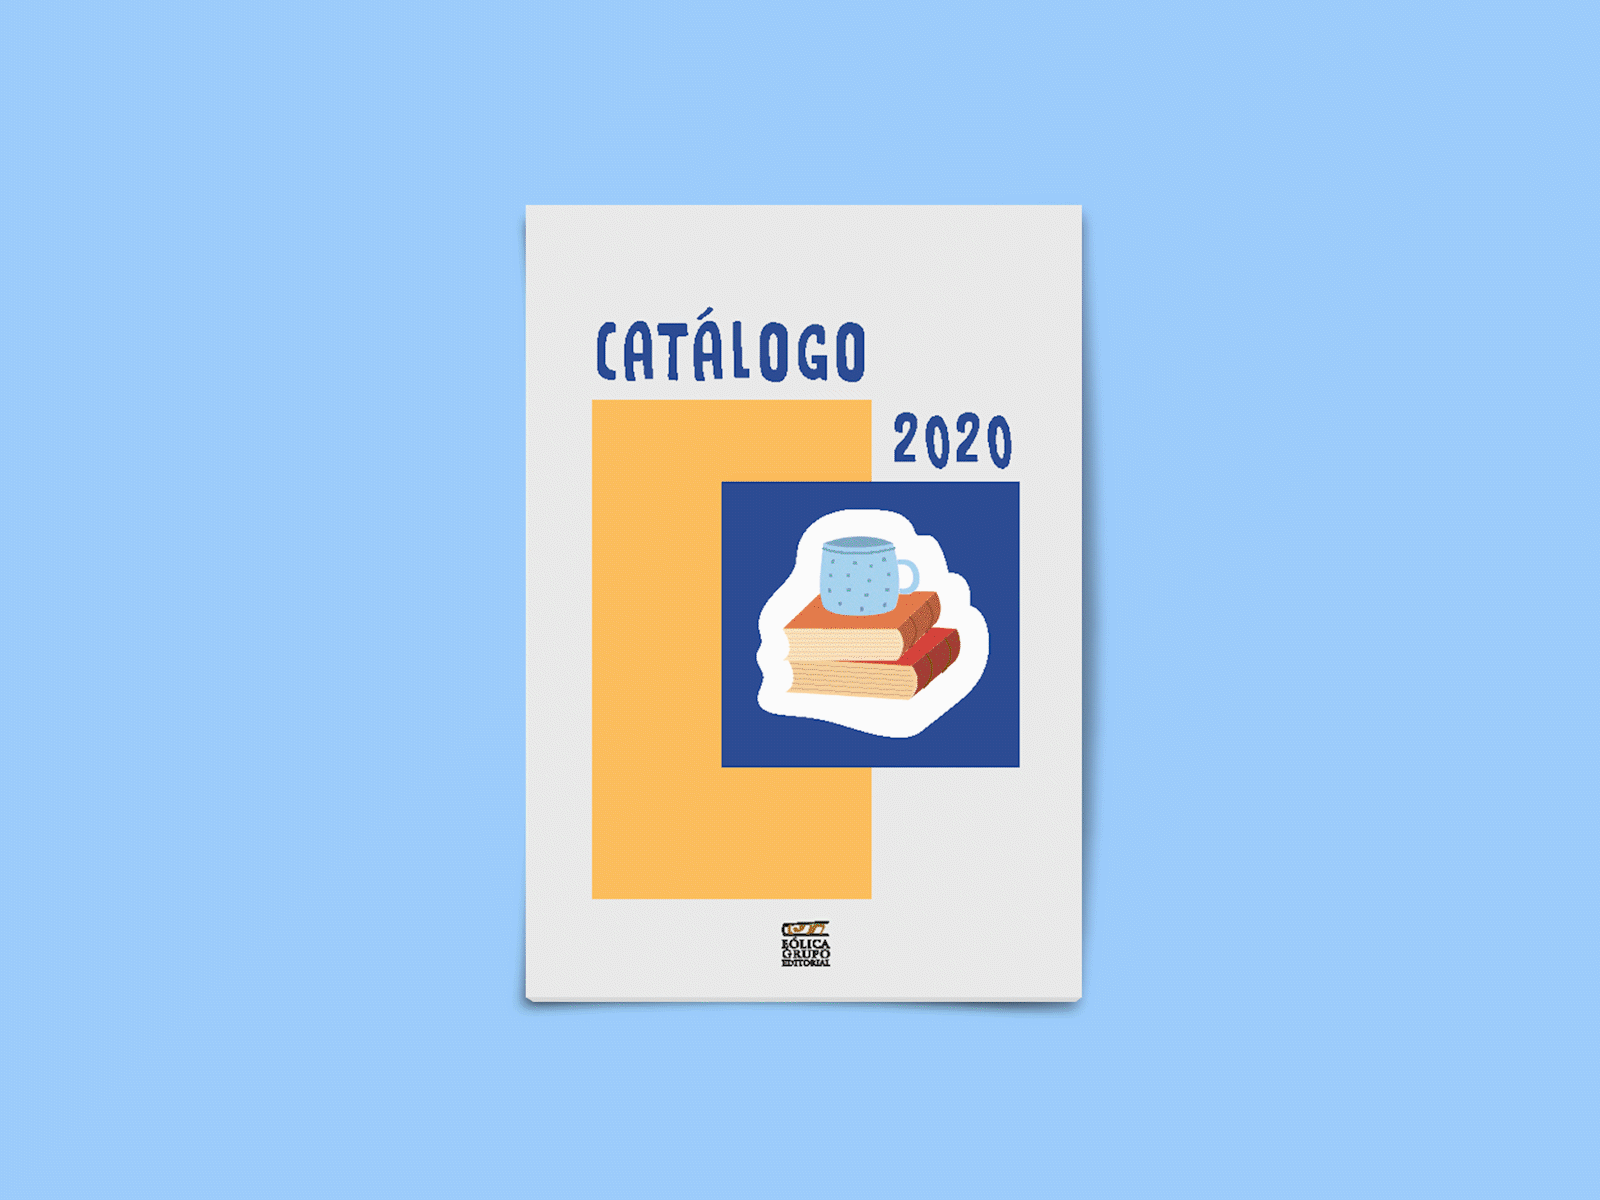 Catálogo 2020 - Editorial design